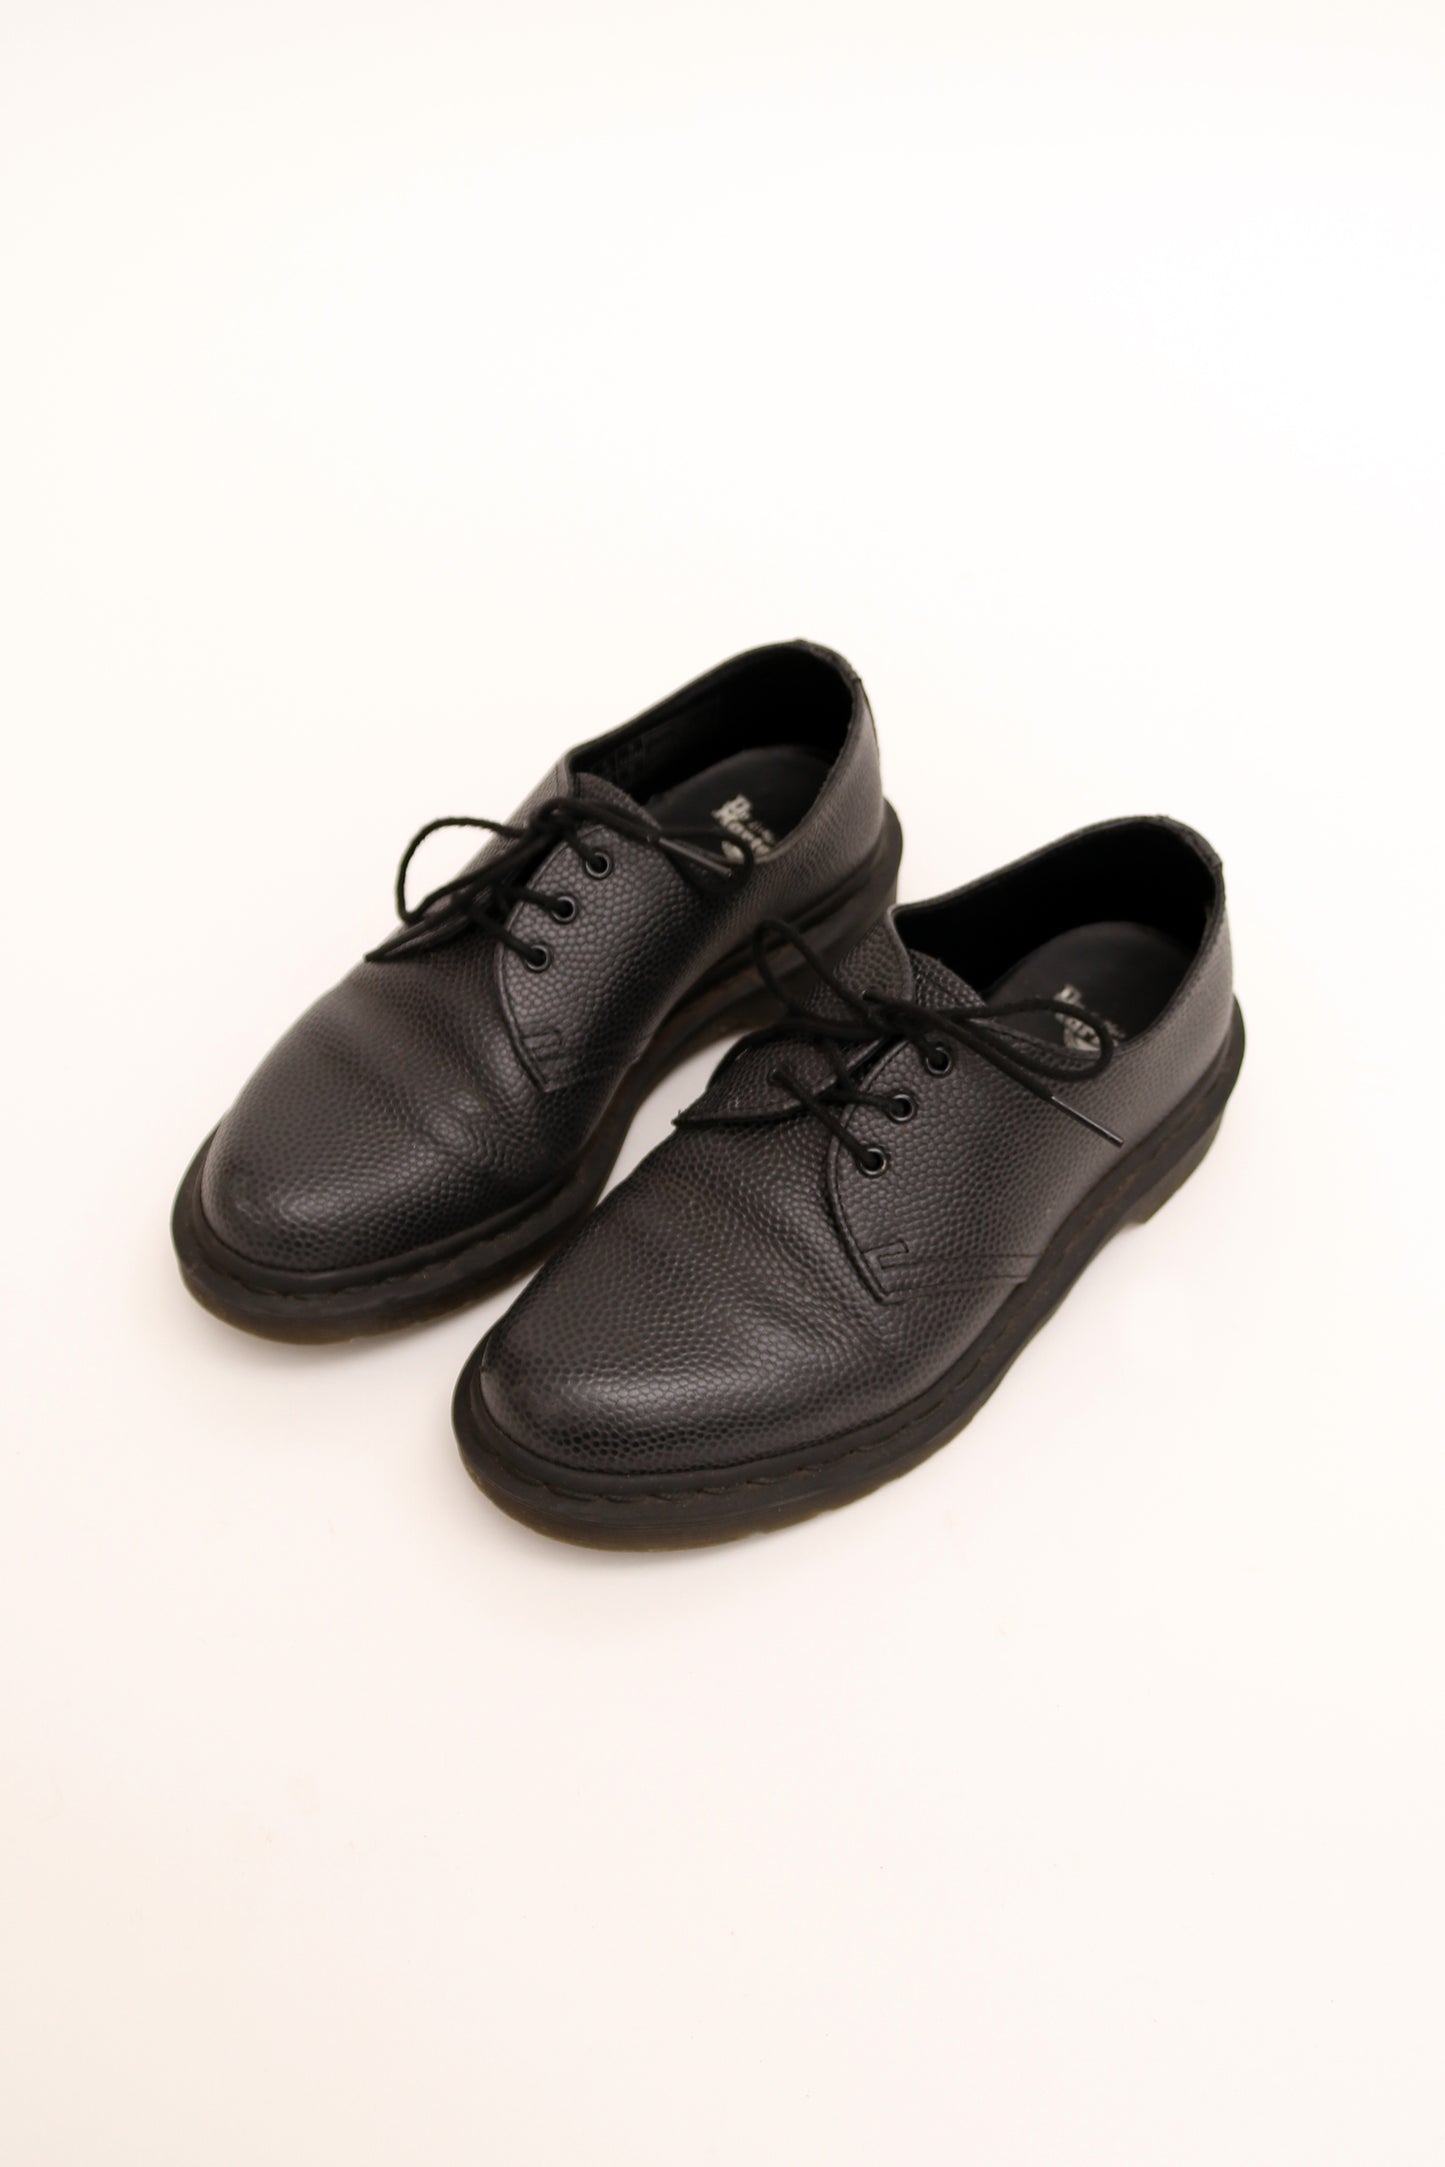 Dr Martens 1461 Pebble Leather Lace-up Shoes